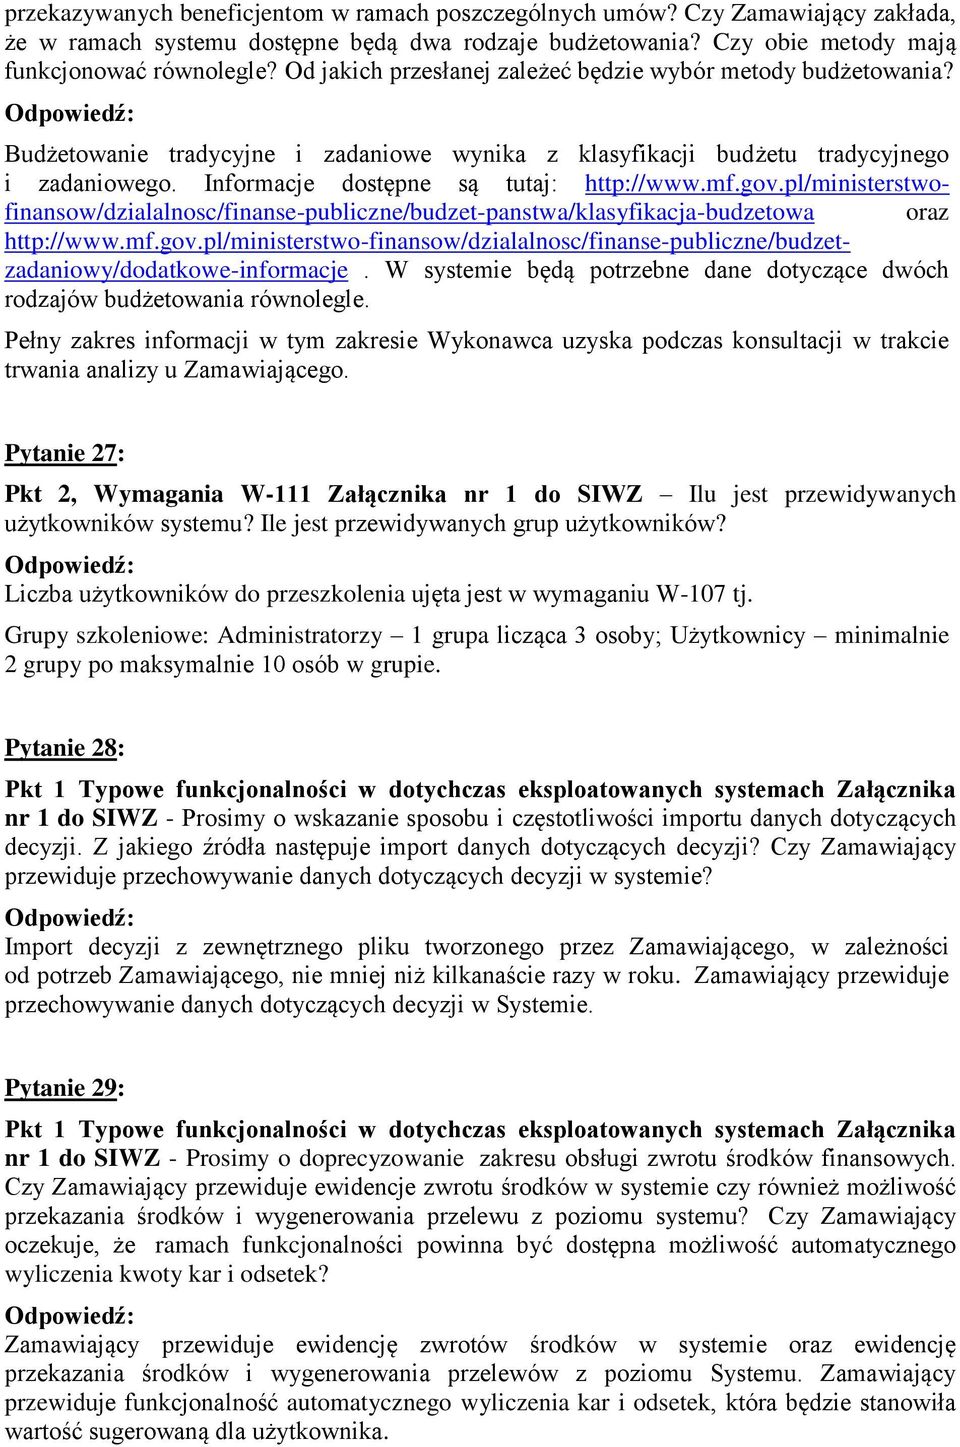 mf.gov.pl/ministerstwofinansow/dzialalnosc/finanse-publiczne/budzet-panstwa/klasyfikacja-budzetowa oraz http://www.mf.gov.pl/ministerstwo-finansow/dzialalnosc/finanse-publiczne/budzetzadaniowy/dodatkowe-informacje.